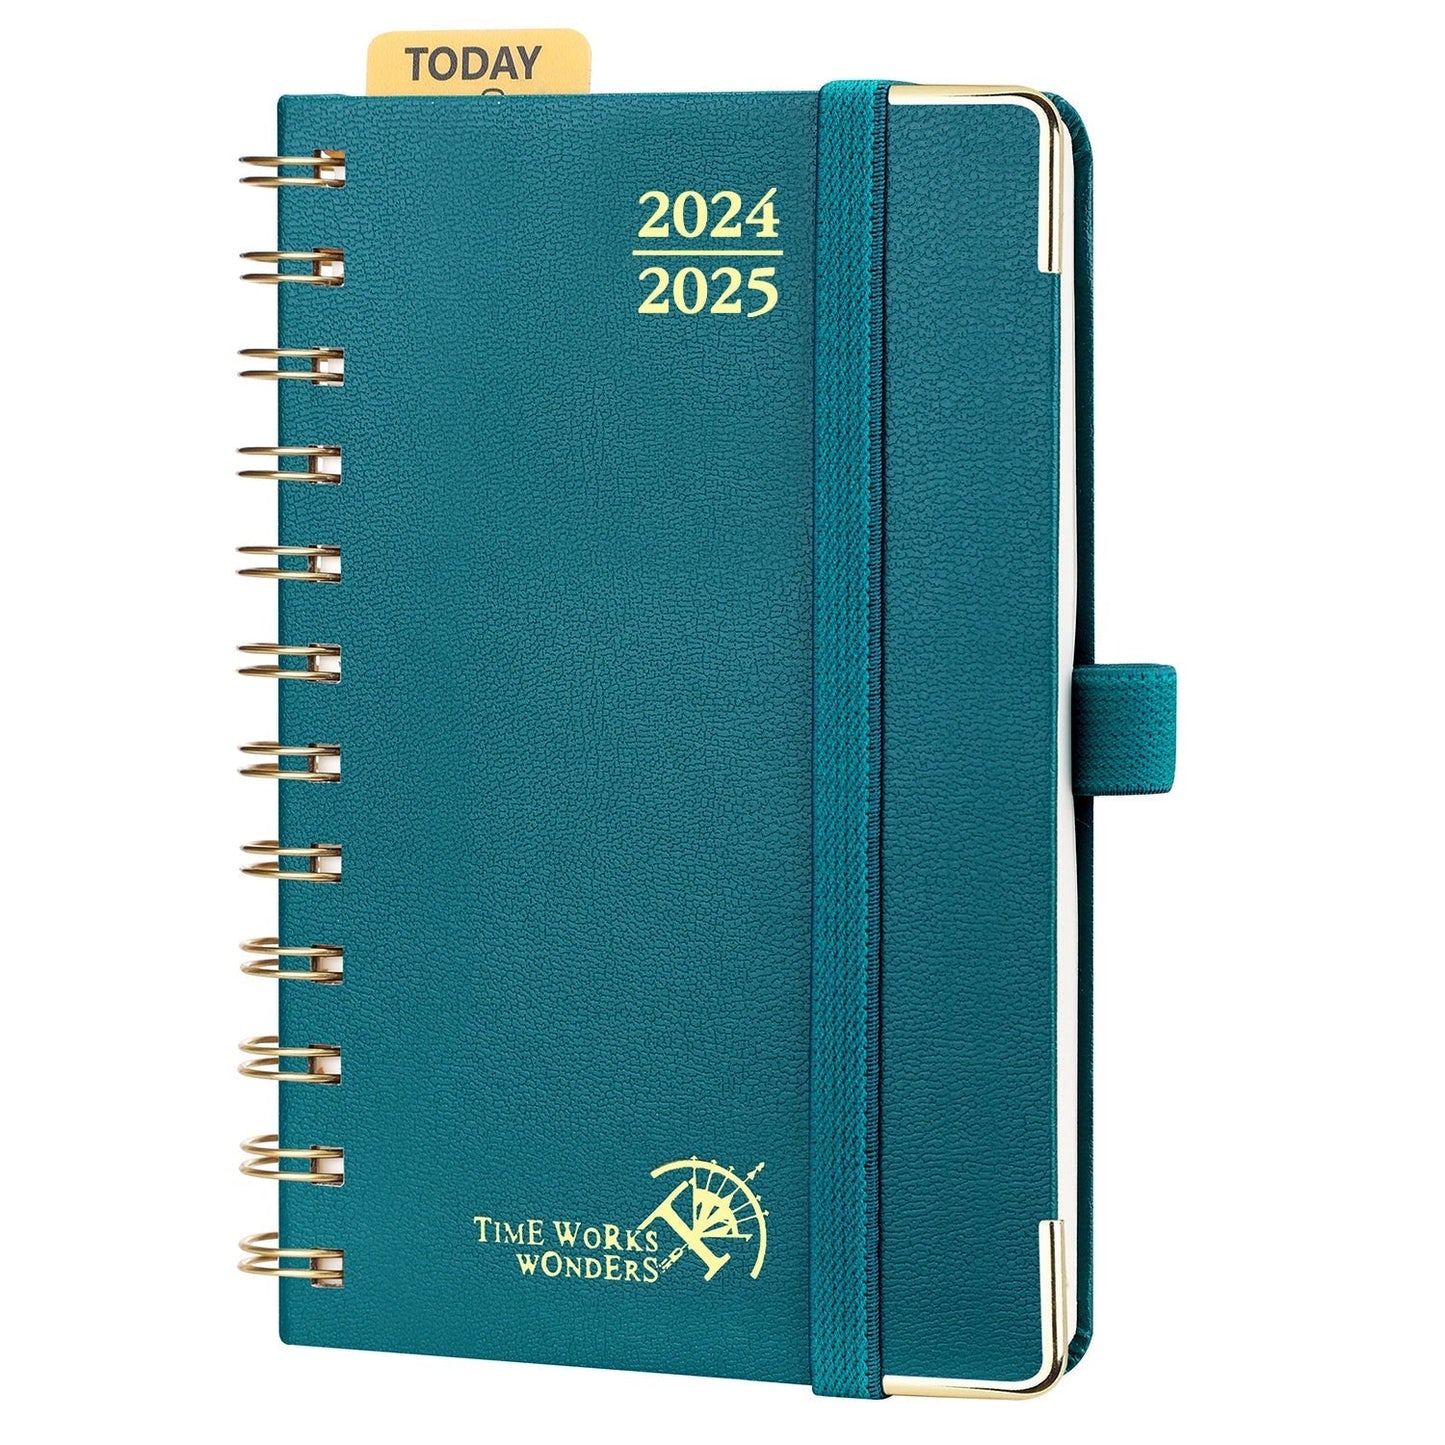 POPRUN 2024-2025 Academic Planner